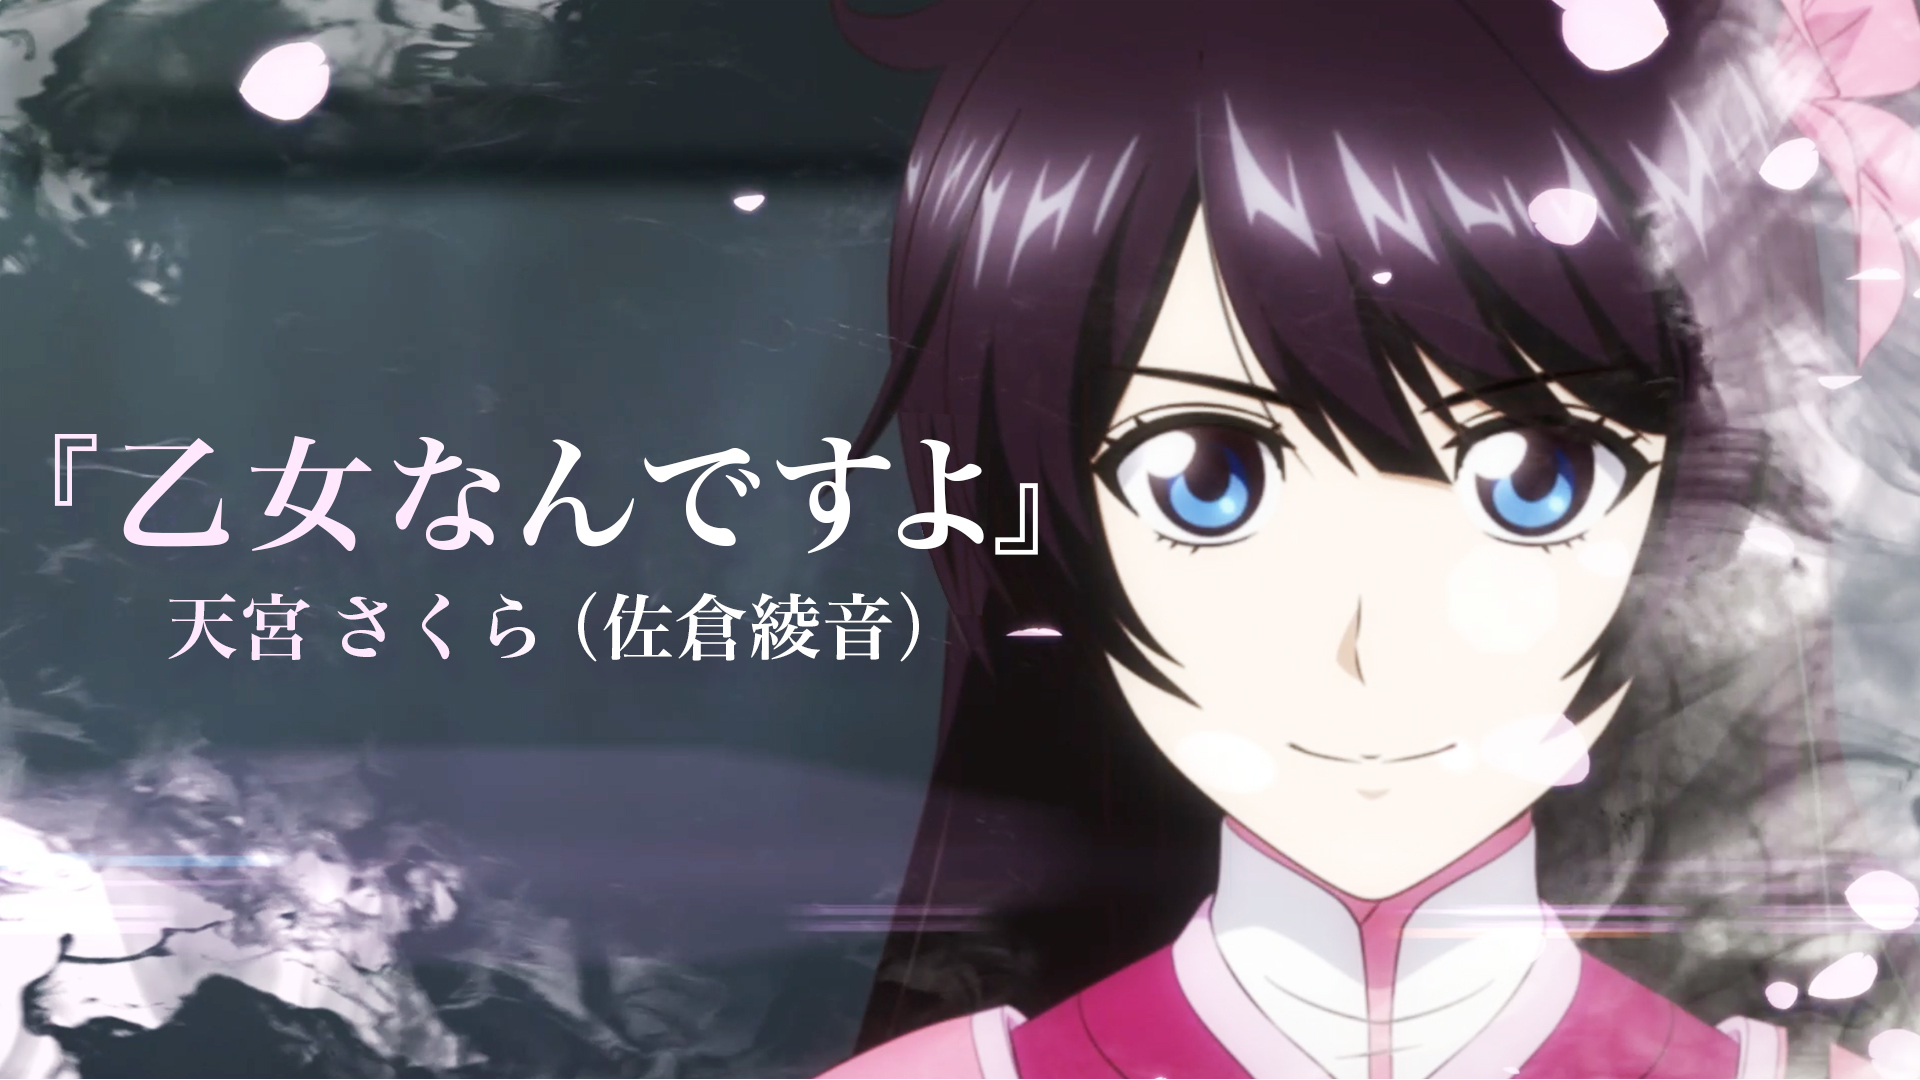 新櫻花大戰 公開 天宮櫻 個人曲mv 以及部分限定版同捆內容 New Sakura Wars The Animation 巴哈姆特